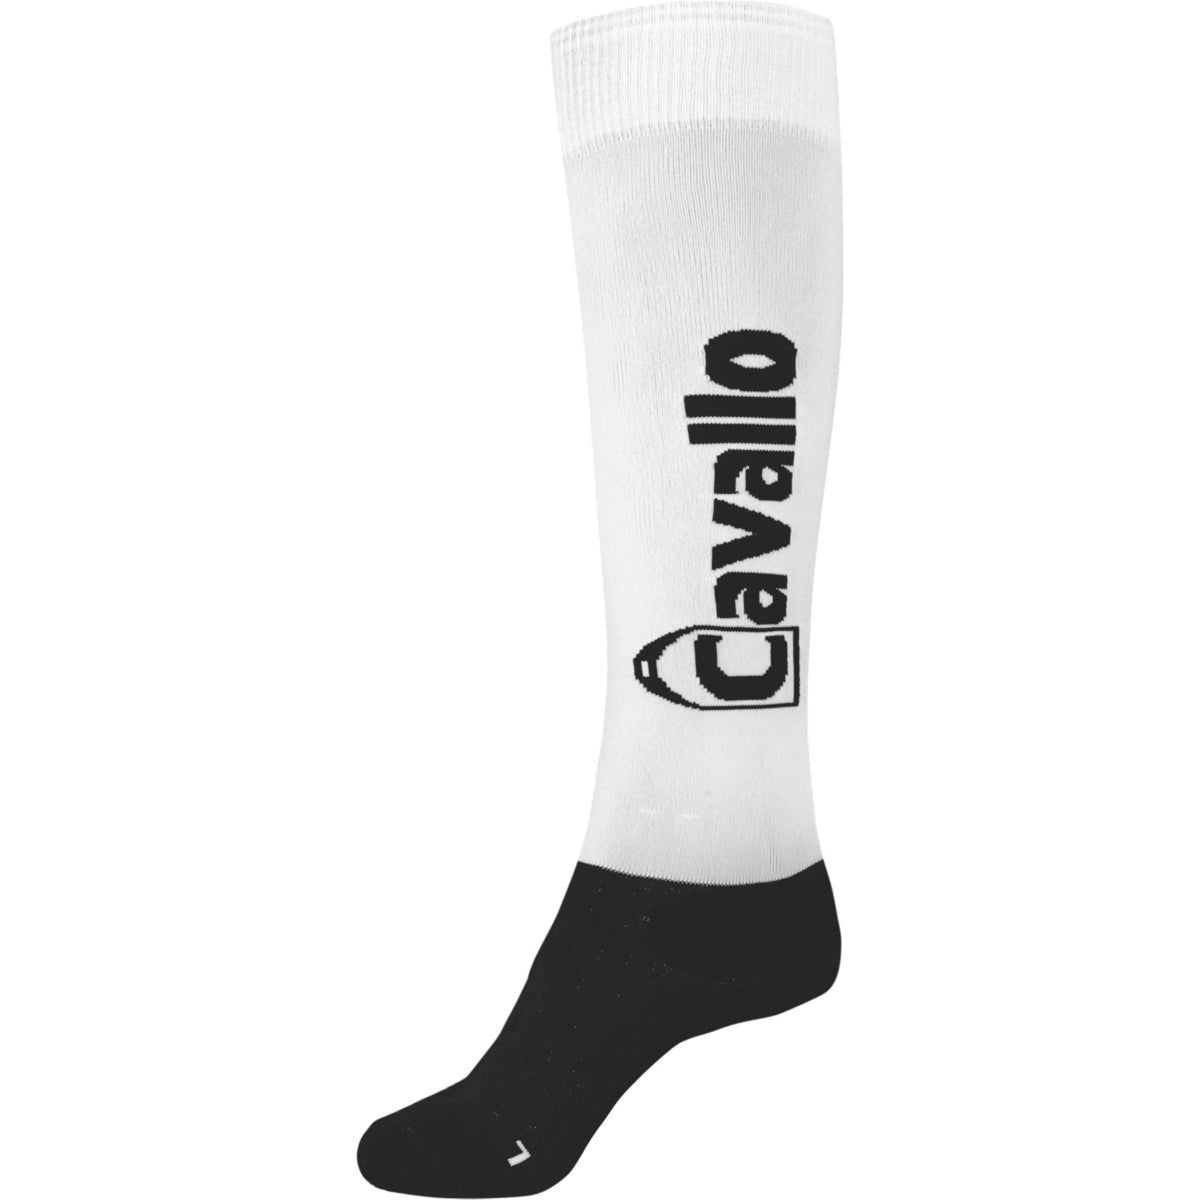 Cavallo Socken CavalSimo C Weiß/Schwarz